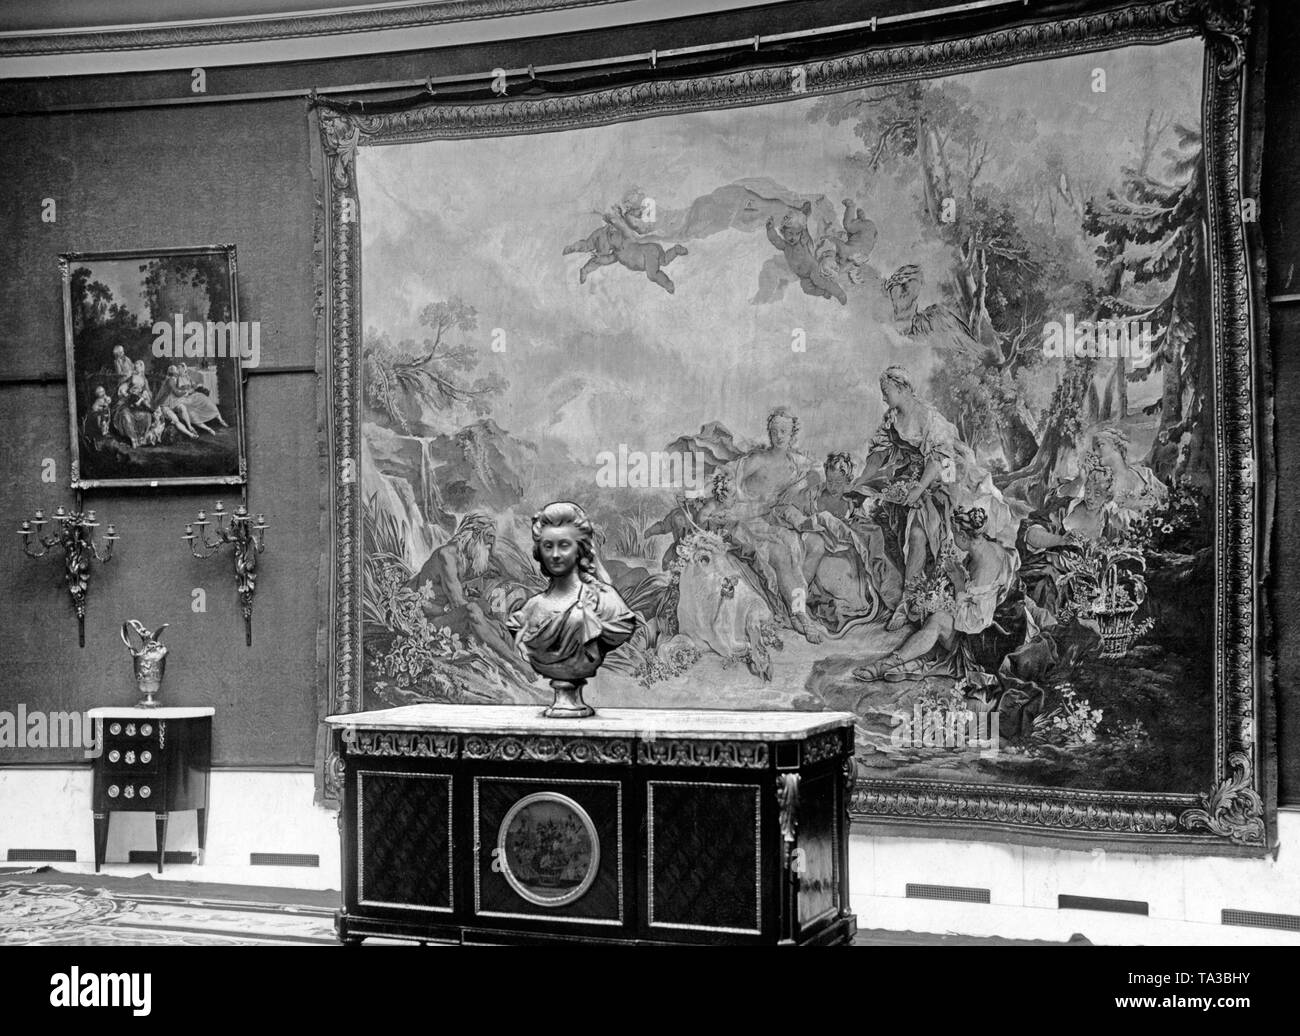 Im Auktionshaus Lepke in Berlin Kunstschätze aus dem Russischen privaten Eigentums wurden auf Betreiben der sowjetischen Regierung versteigert. Aufgrund der zahlreichen Beschwerden von russischen Emigranten in Berlin, das Amtsgericht bestellt einen Bruch in der Auktion und die Ausgrenzung von einigen Stücken aus der Auktion kurze Zeit später. Stockfoto